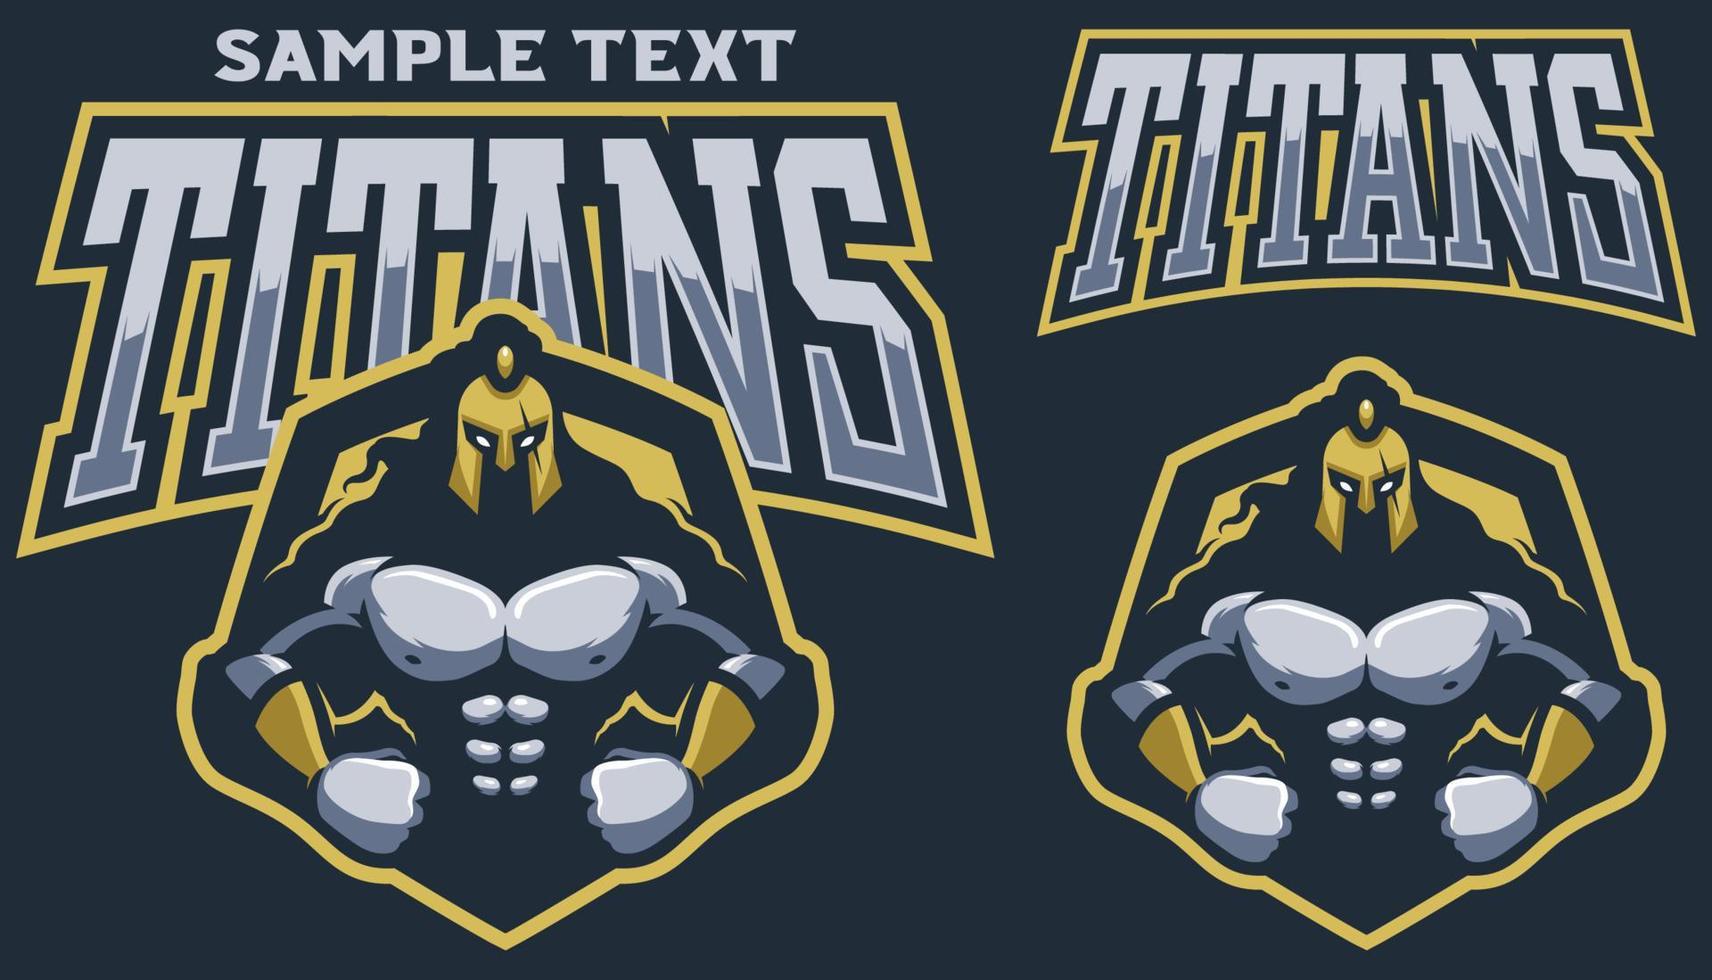 Titans Team Mascot vector